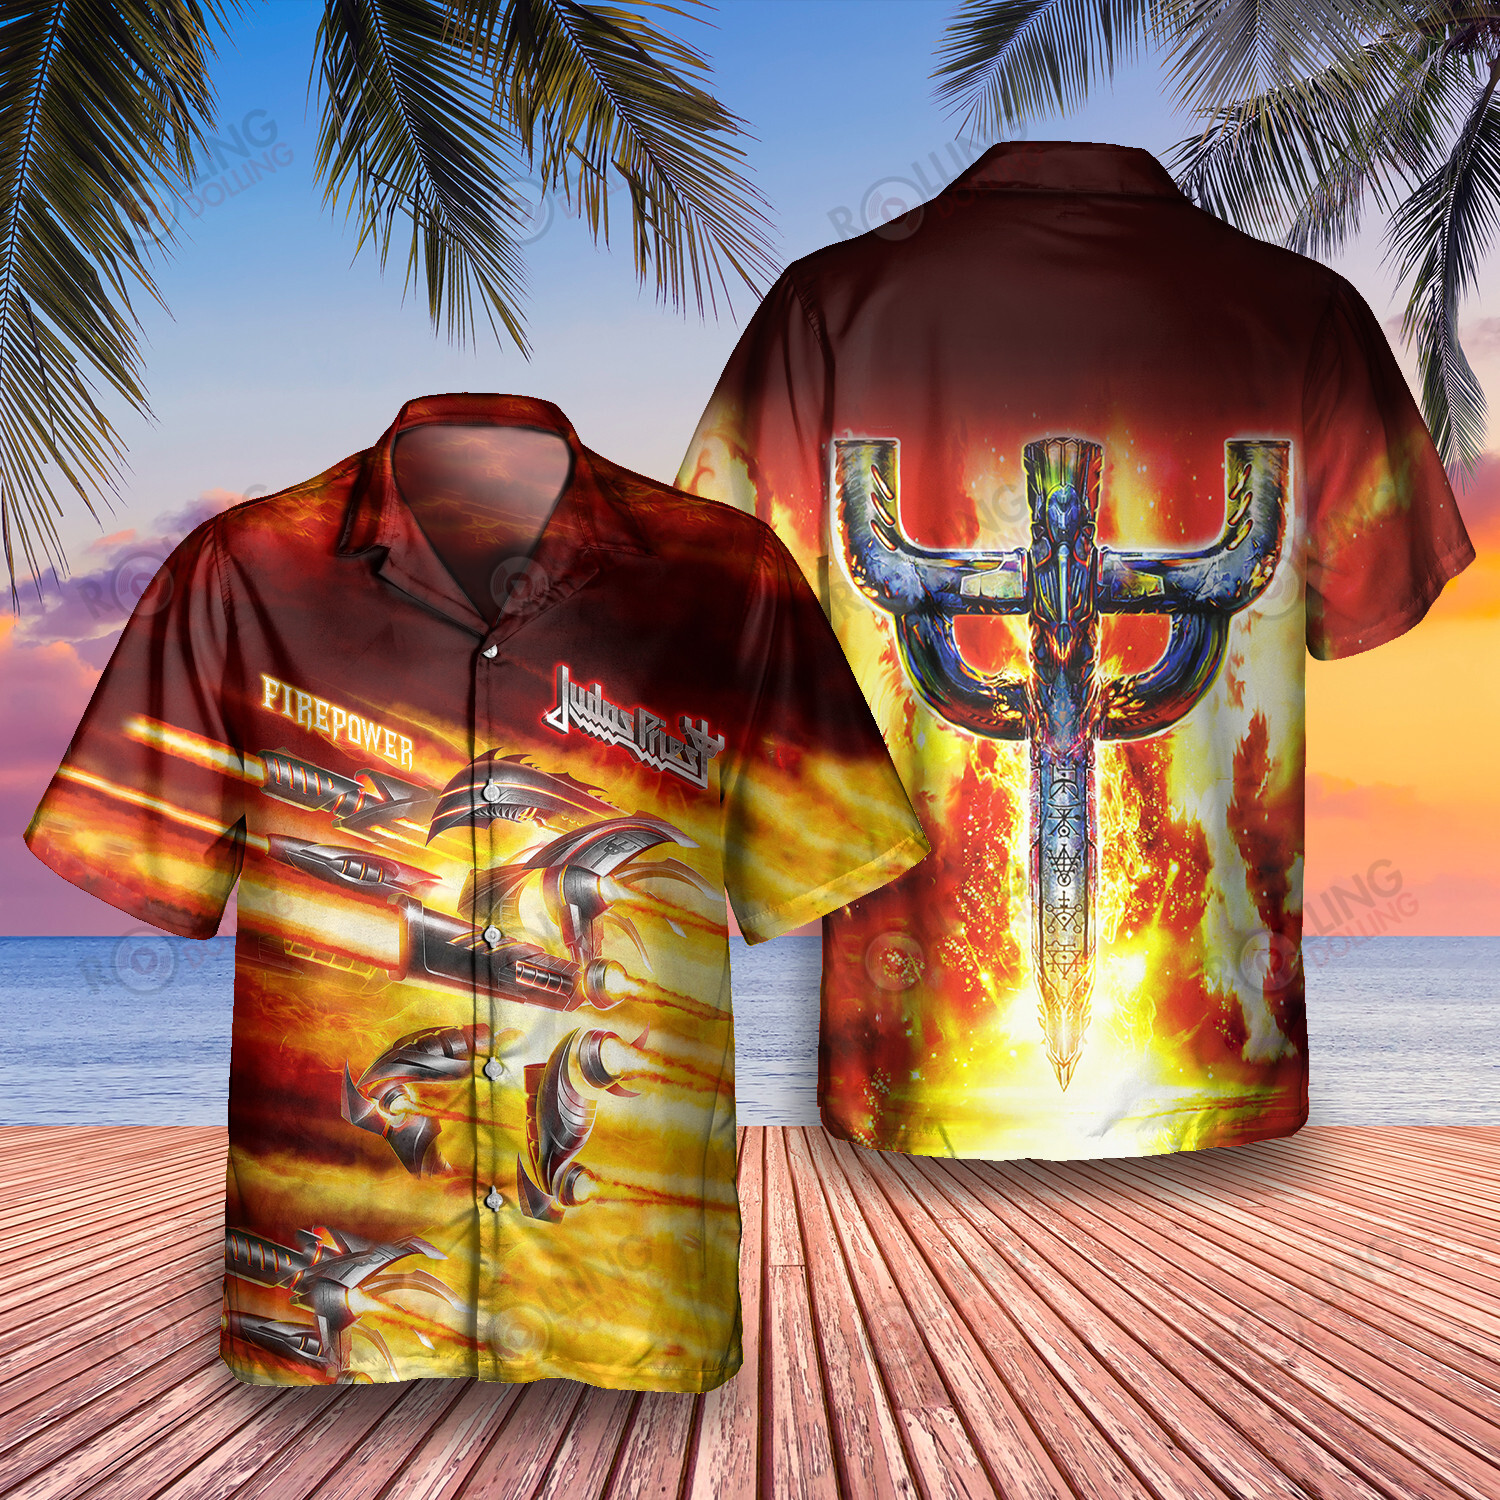 HOT Judas Priest Firepower Album Tropical Shirt1